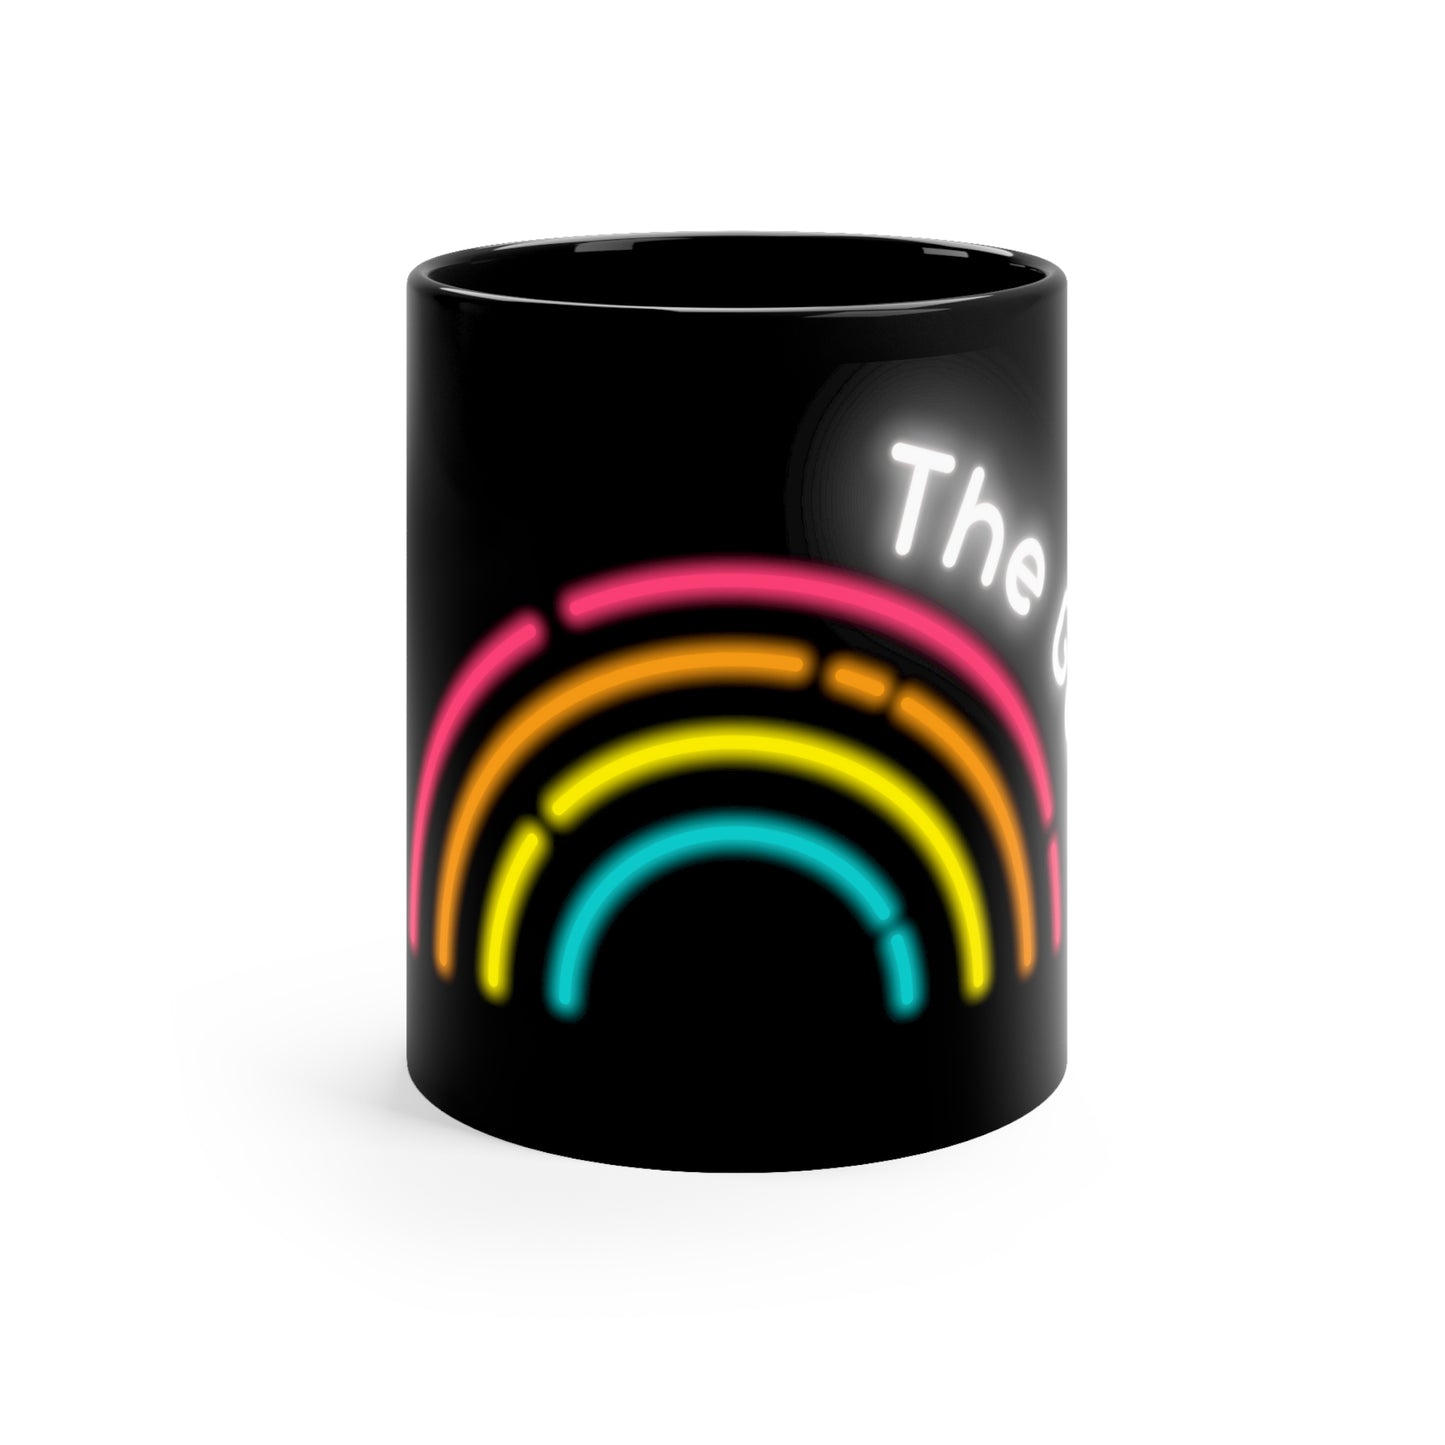 The GAY! coffee mug